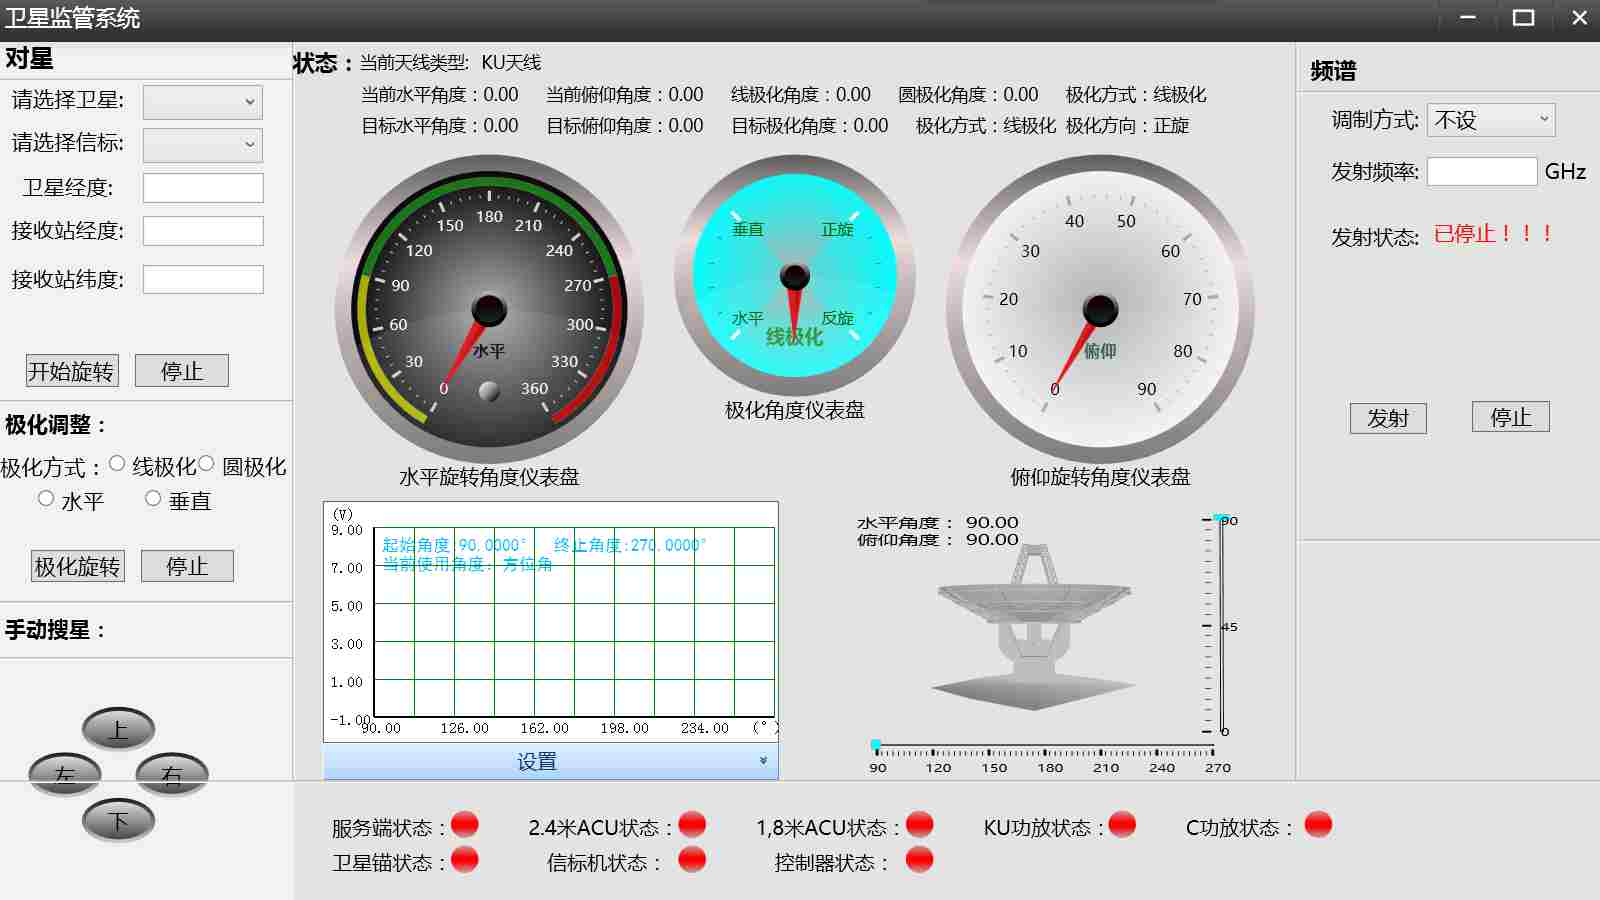 北京衛星通信系統監控